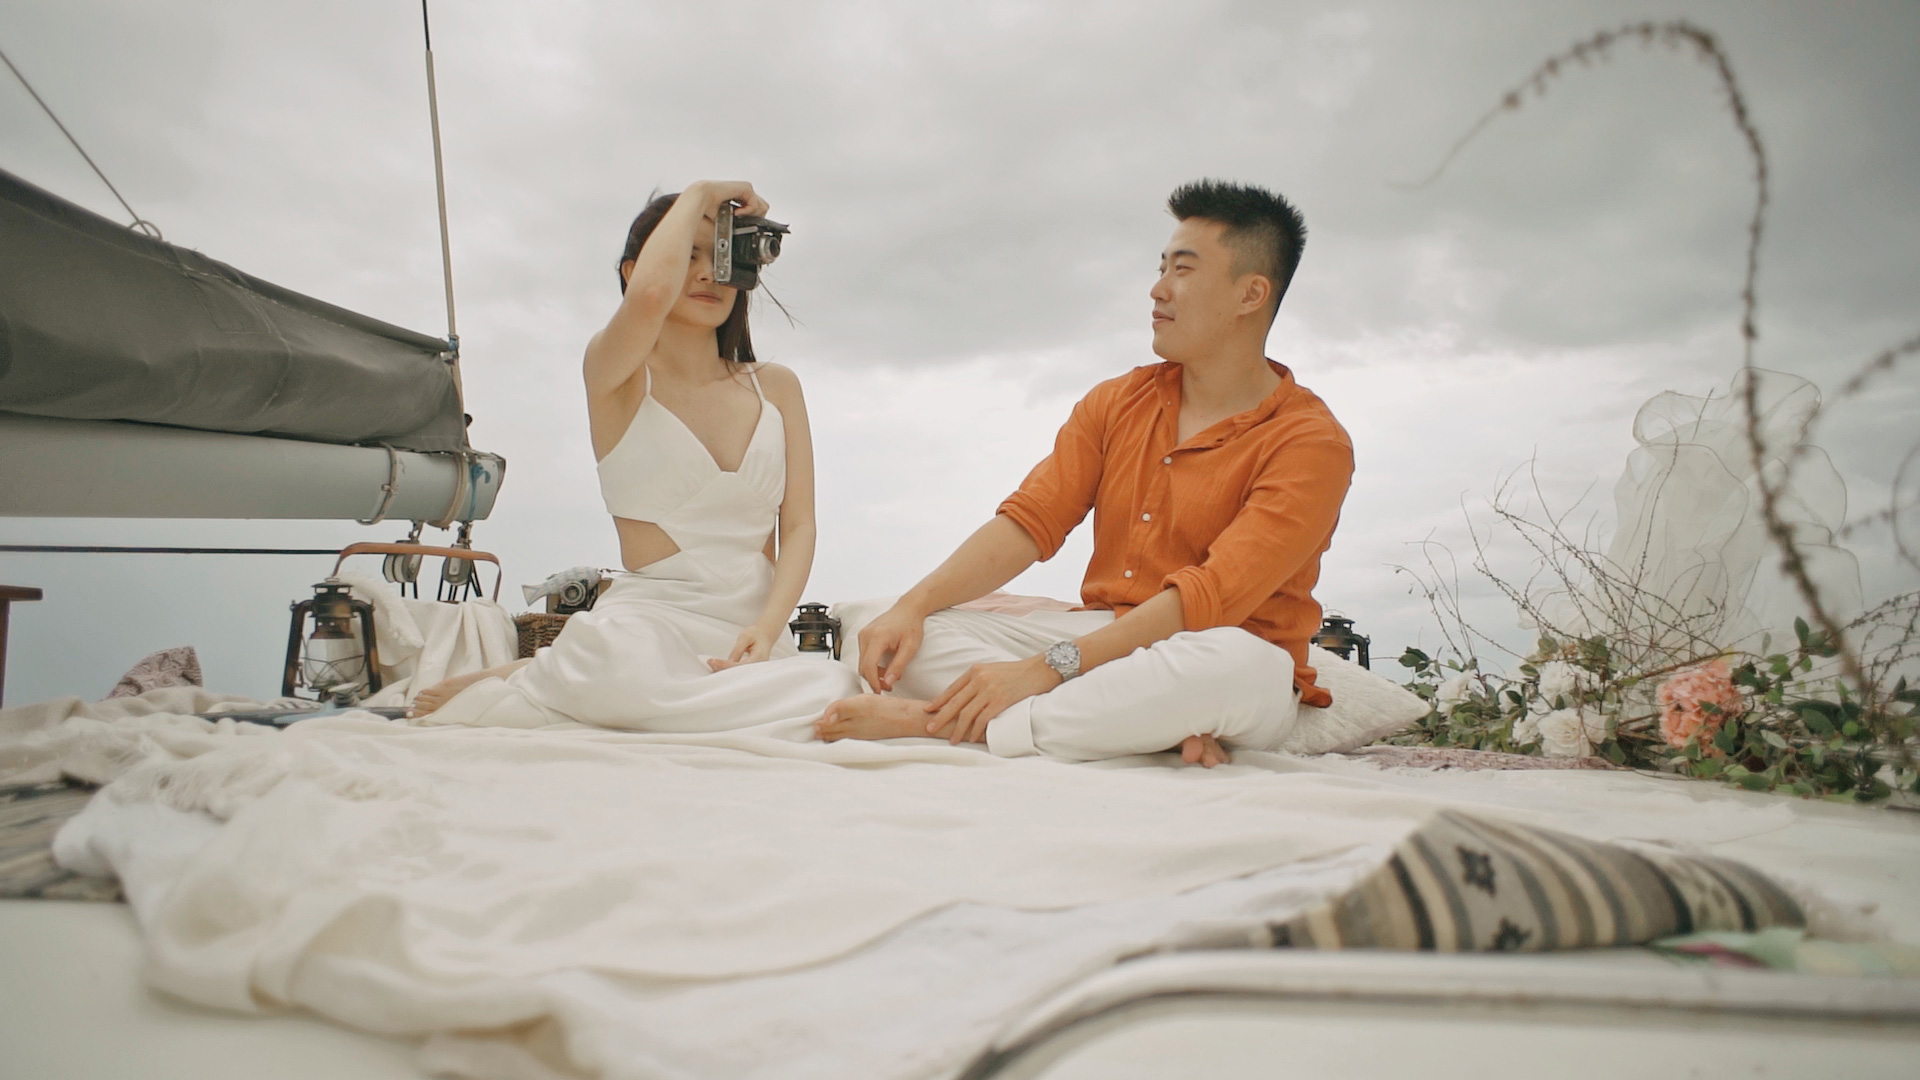 Proposal Videography on Jemme Yacht Bali – R & J